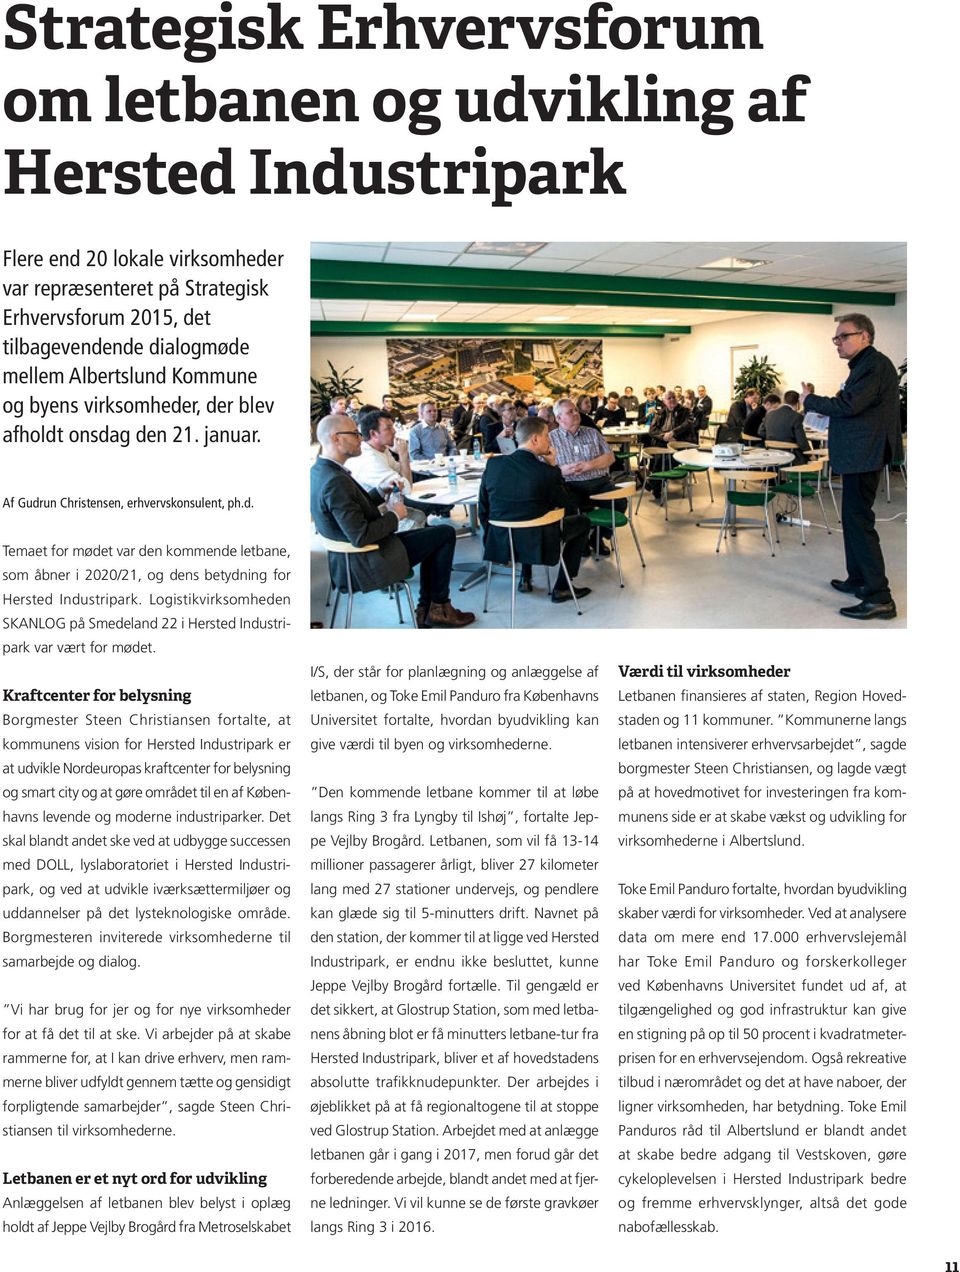 Logistikvirksomheden SKANLOG på Smedeland 22 i Hersted Industripark var vært for mødet.